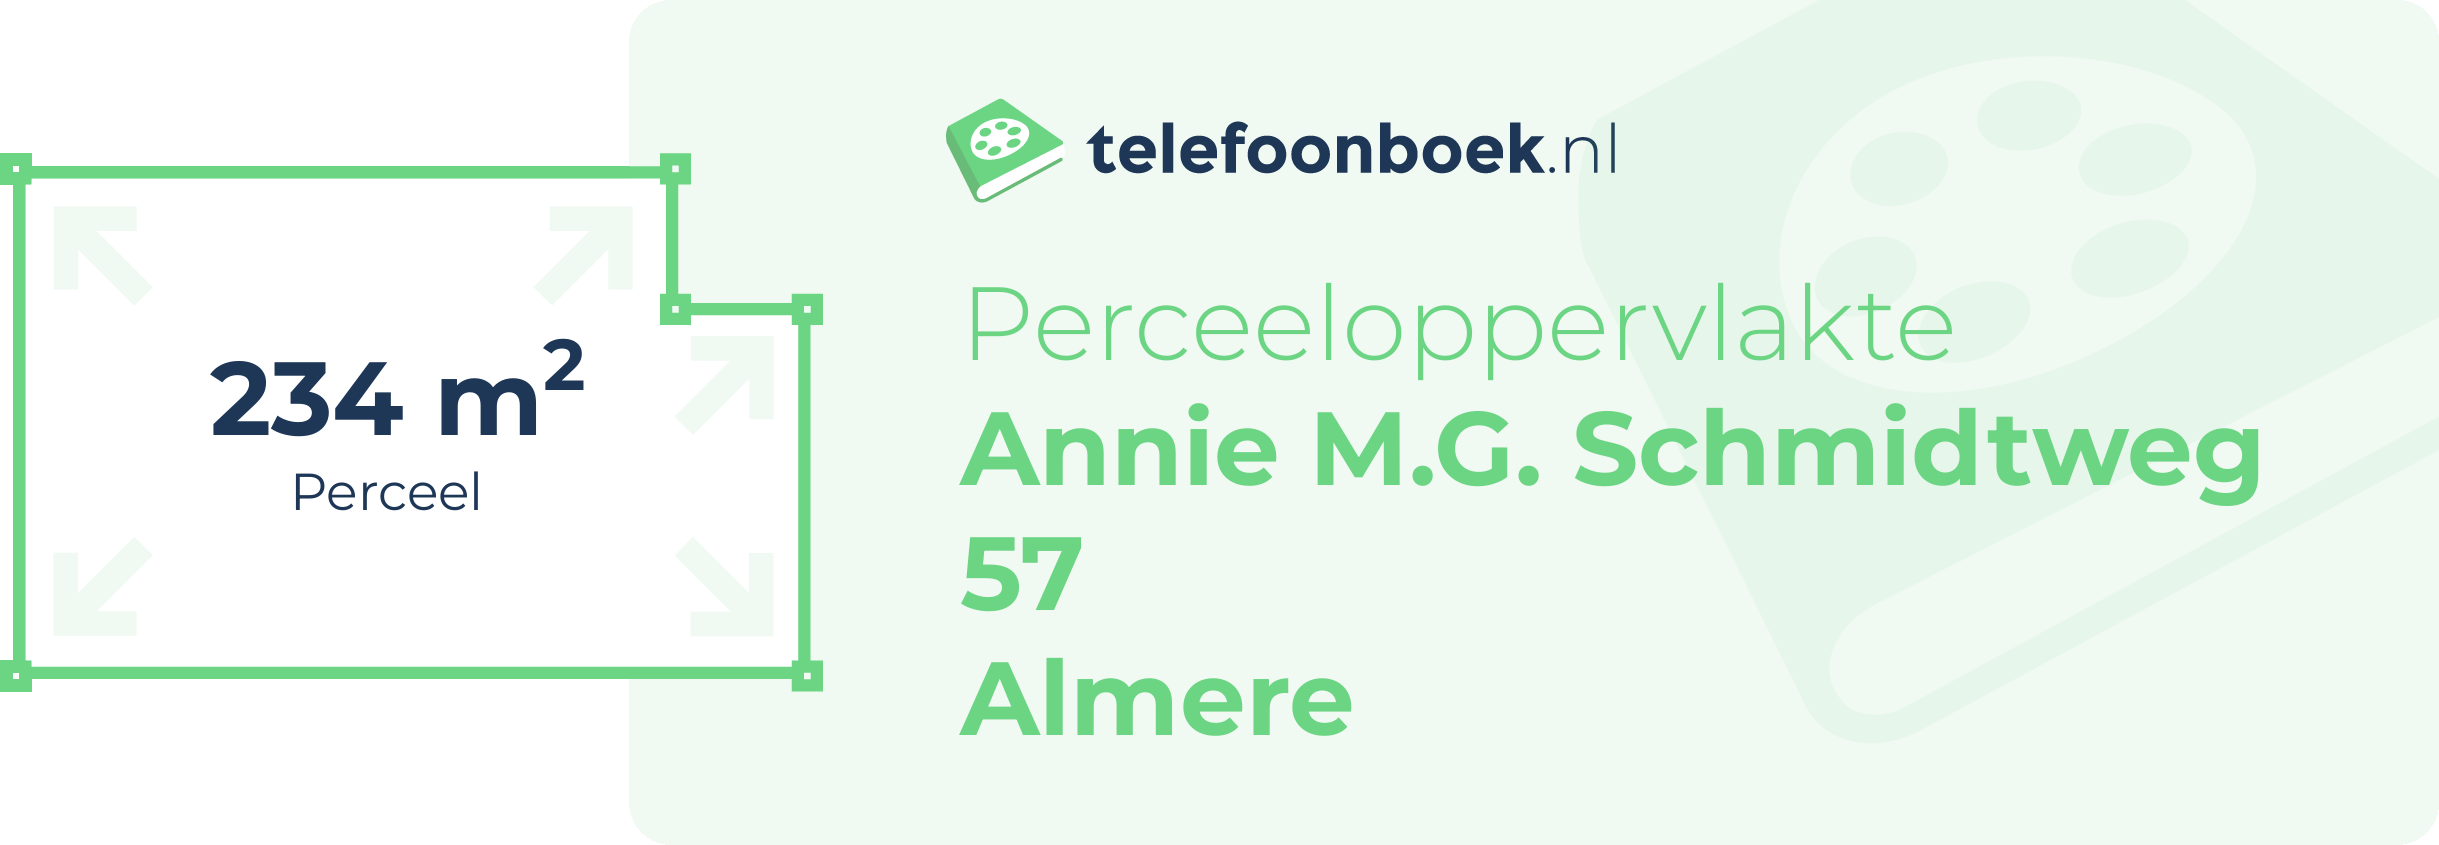 Perceeloppervlakte Annie M.G. Schmidtweg 57 Almere